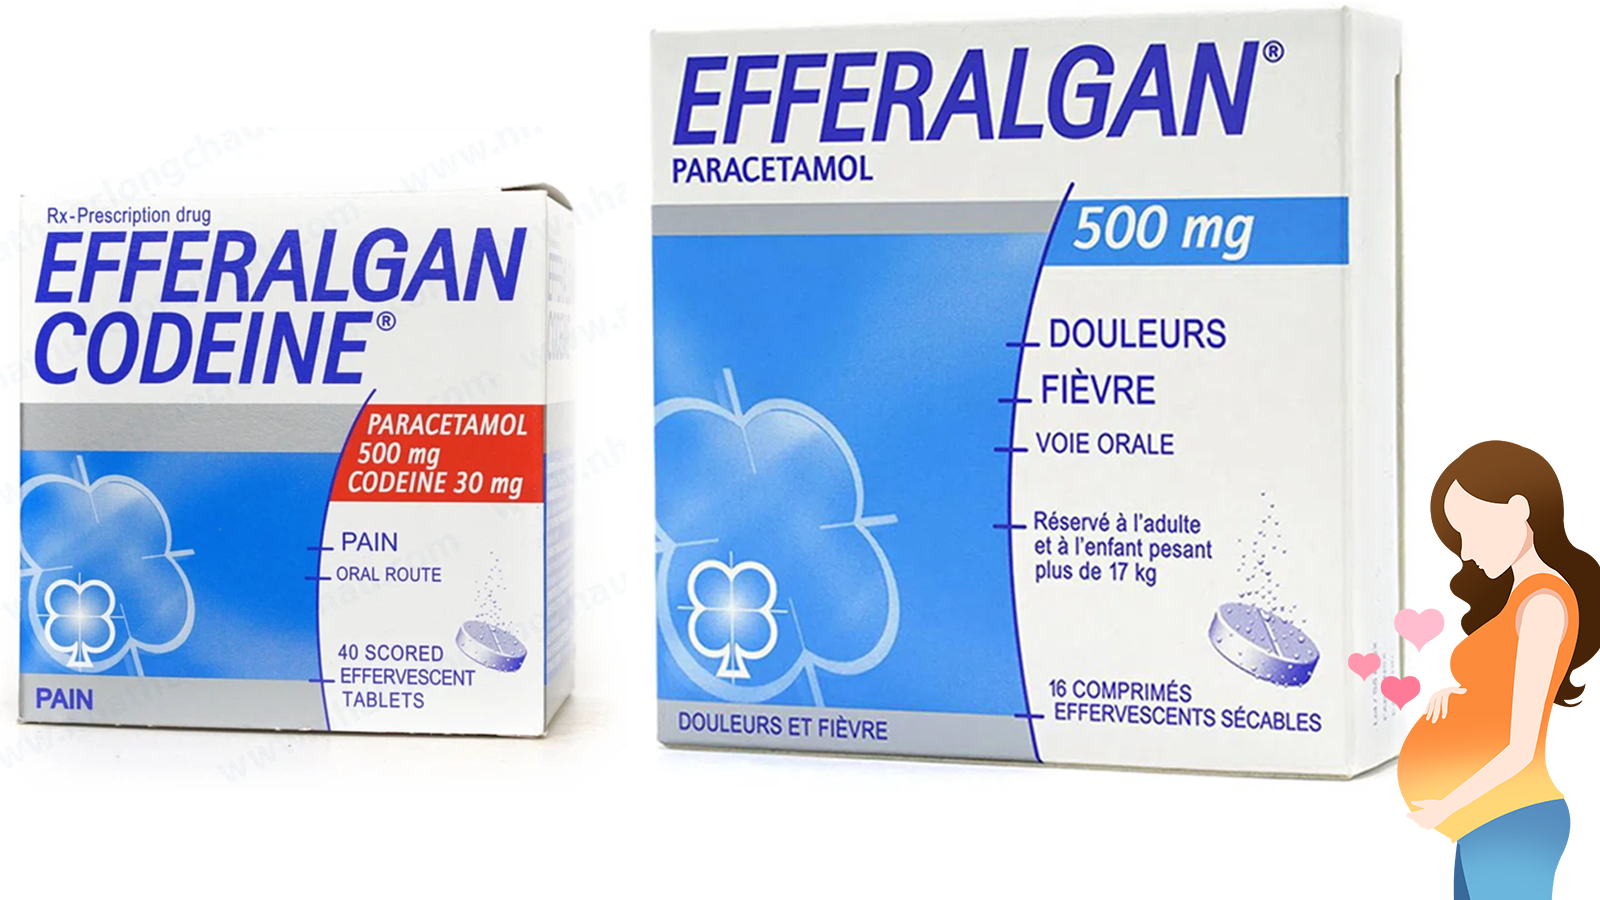 Efferalgan có an toàn cho bà bầu trong việc giảm đau và hạ sốt không?
